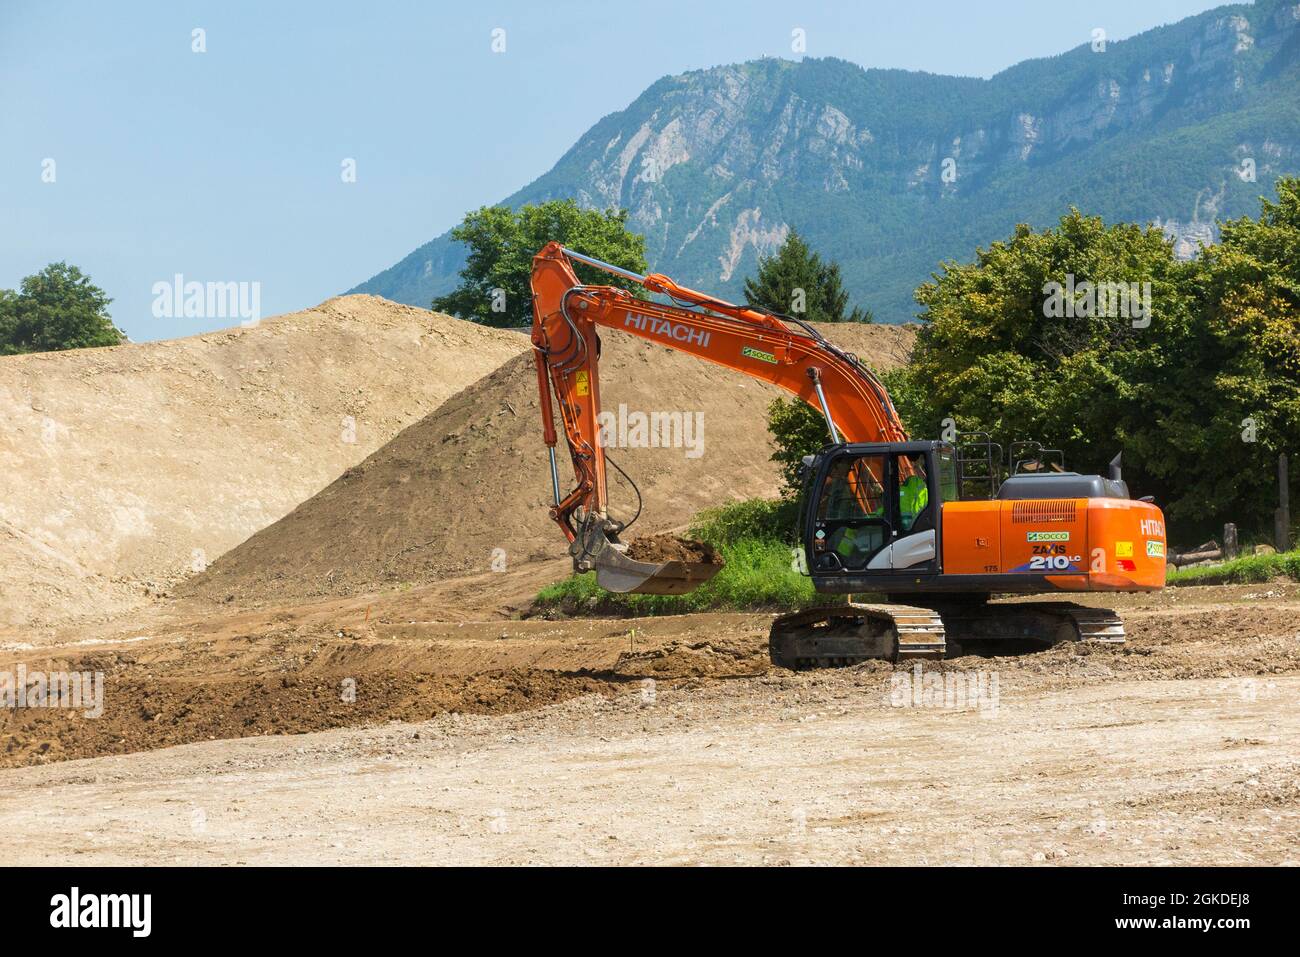 Hitachi digger / maquinaria pesada de planta que trabaja en un sitio, edificio, construcción u otro, en Savoy, Francia. Las montañas se pueden ver en la distancia detrás de este sitio suburbano. (127) Foto de stock